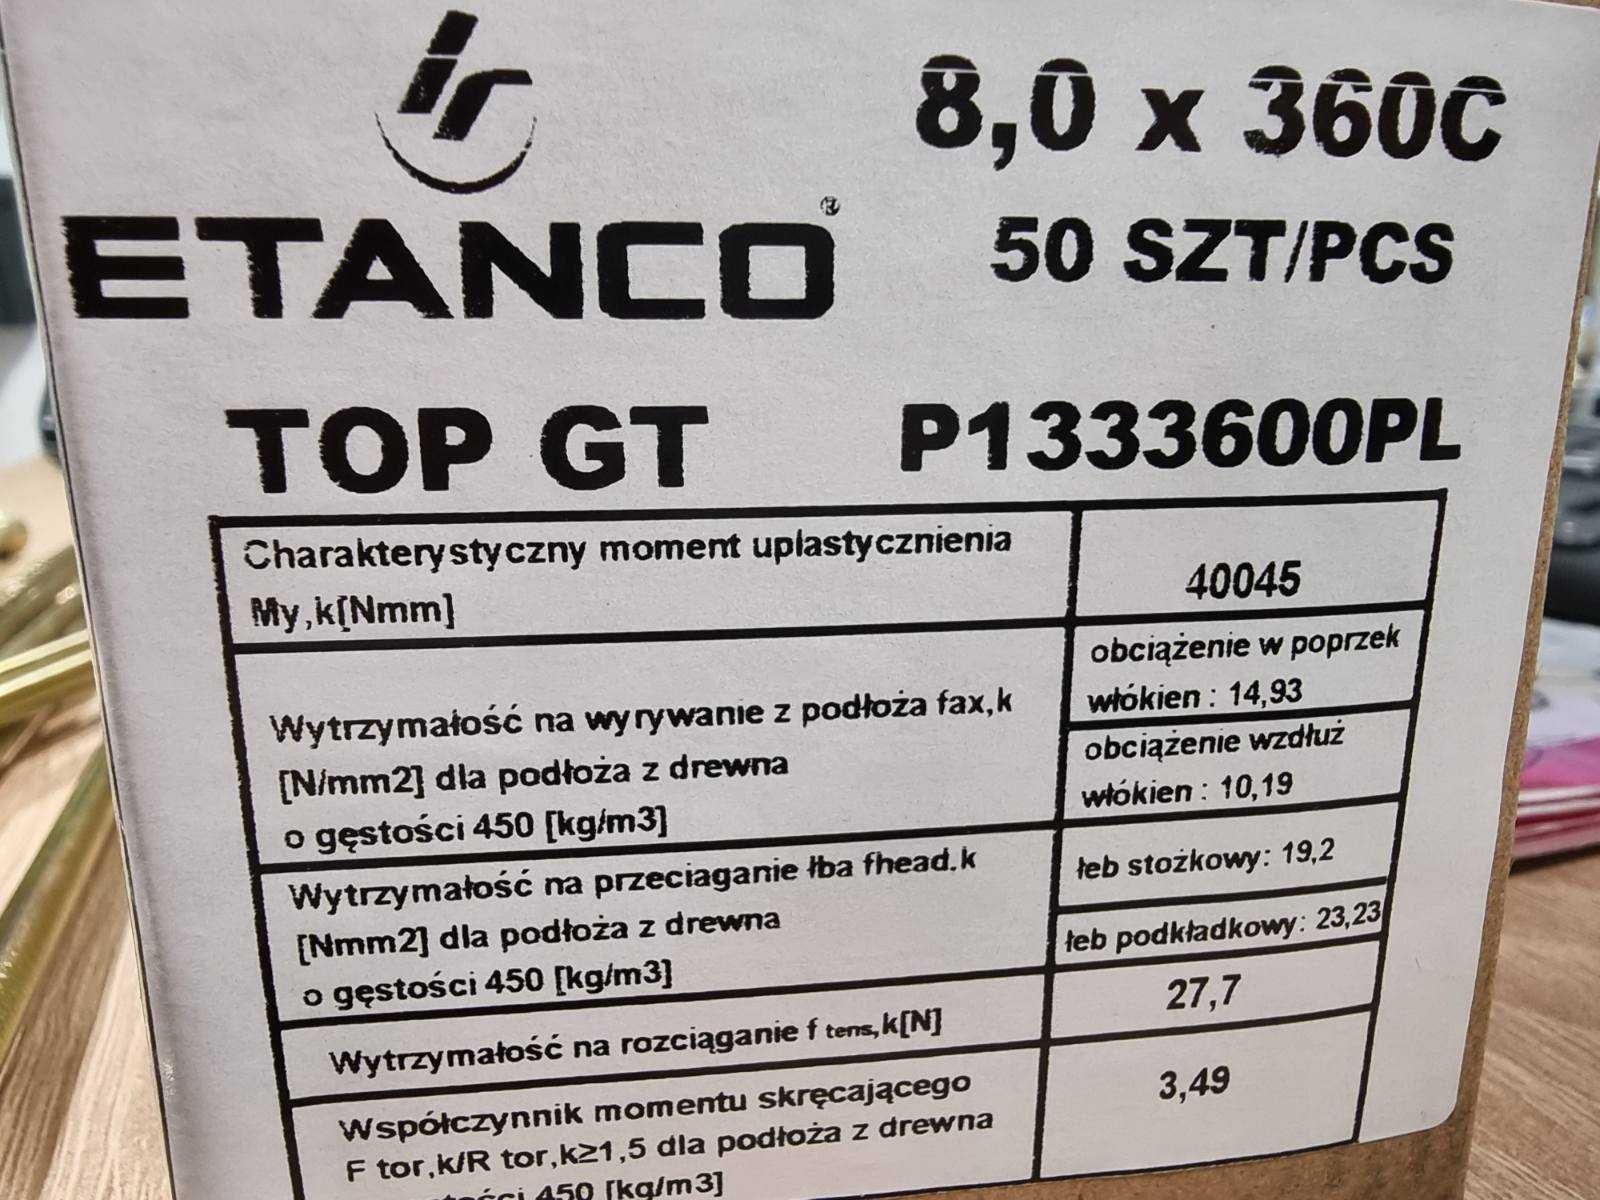 Wkręt ciesielski ETANCO 8,0 x 360C op.50szt